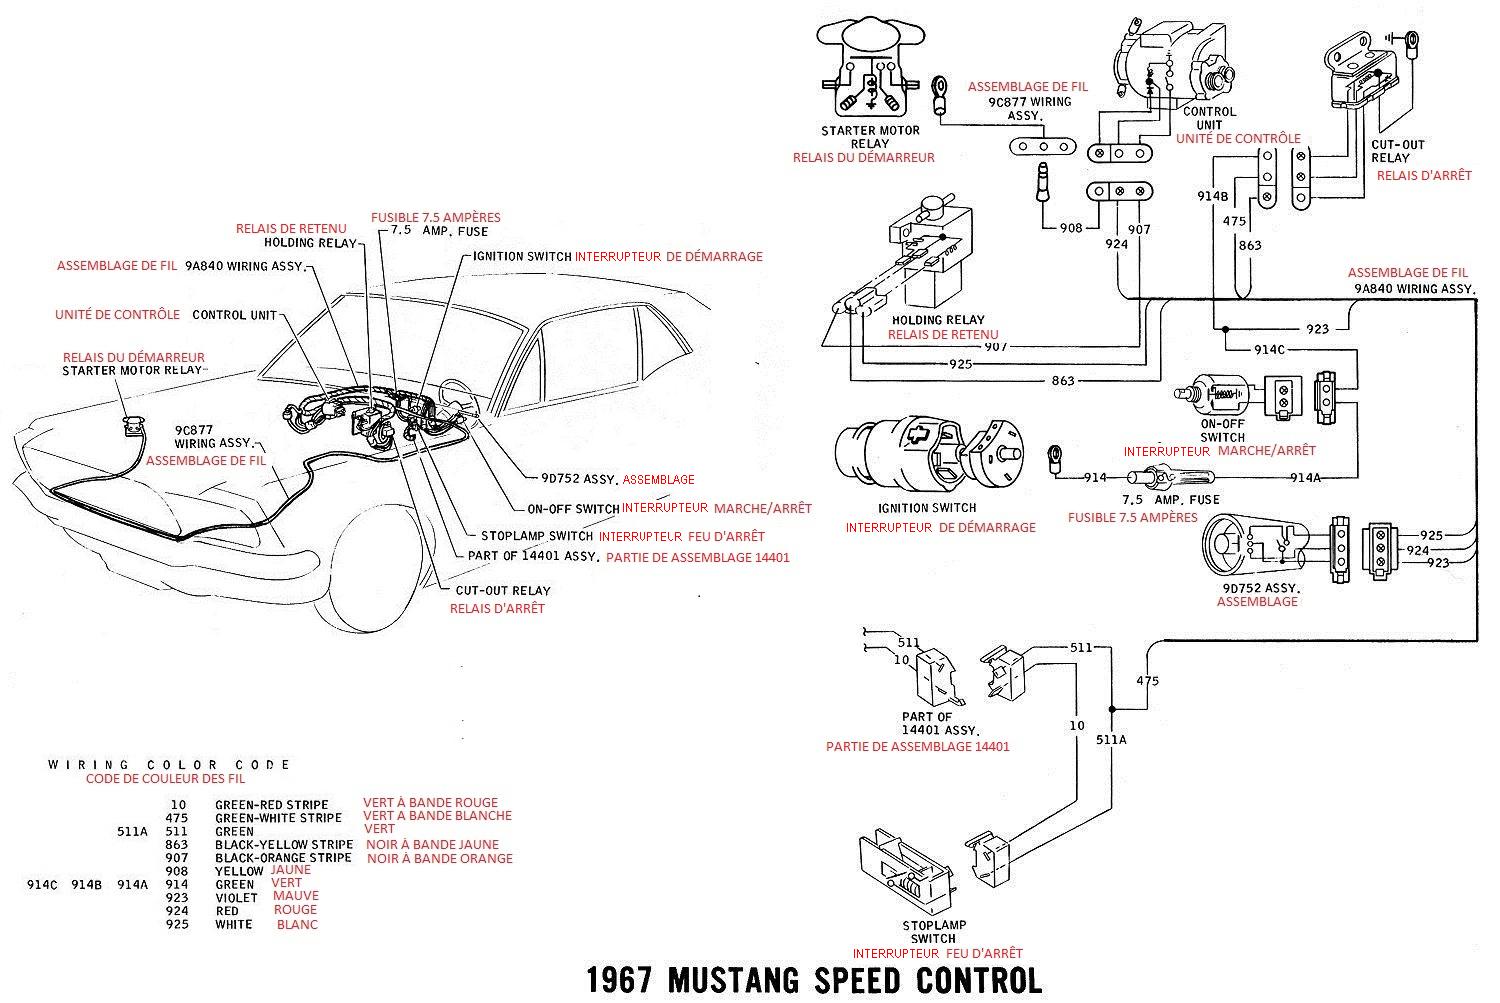 Schéma et diagramme électrique en français pour la Mustang 1967 Ok_07_10